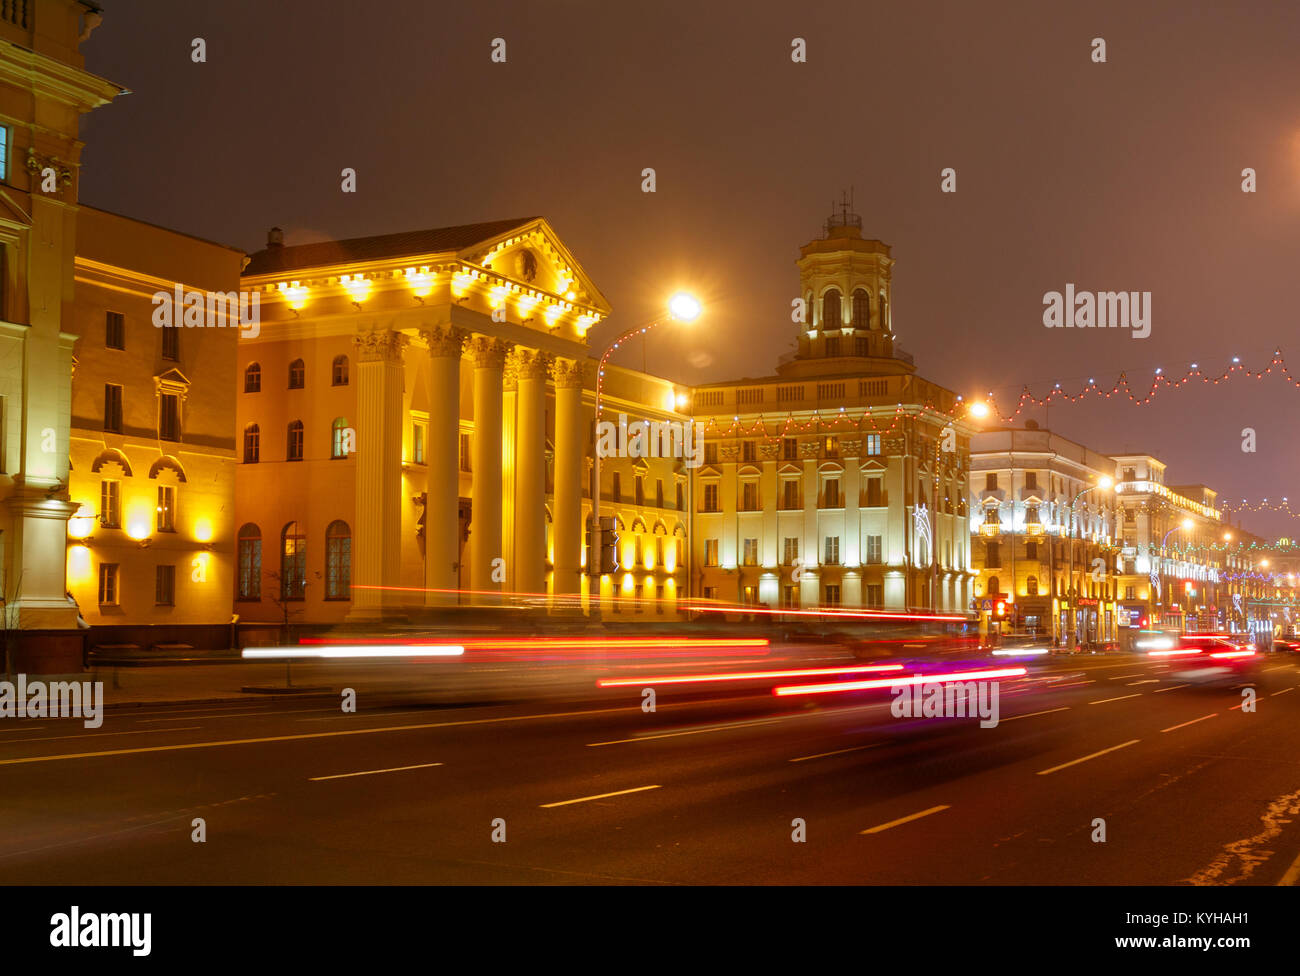 Sede centrale illuminato del membro del Comitato per la protezione della Repubblica di Bielorussia, il KGB bielorusso. Minsk, Bielorussia. Foto Stock